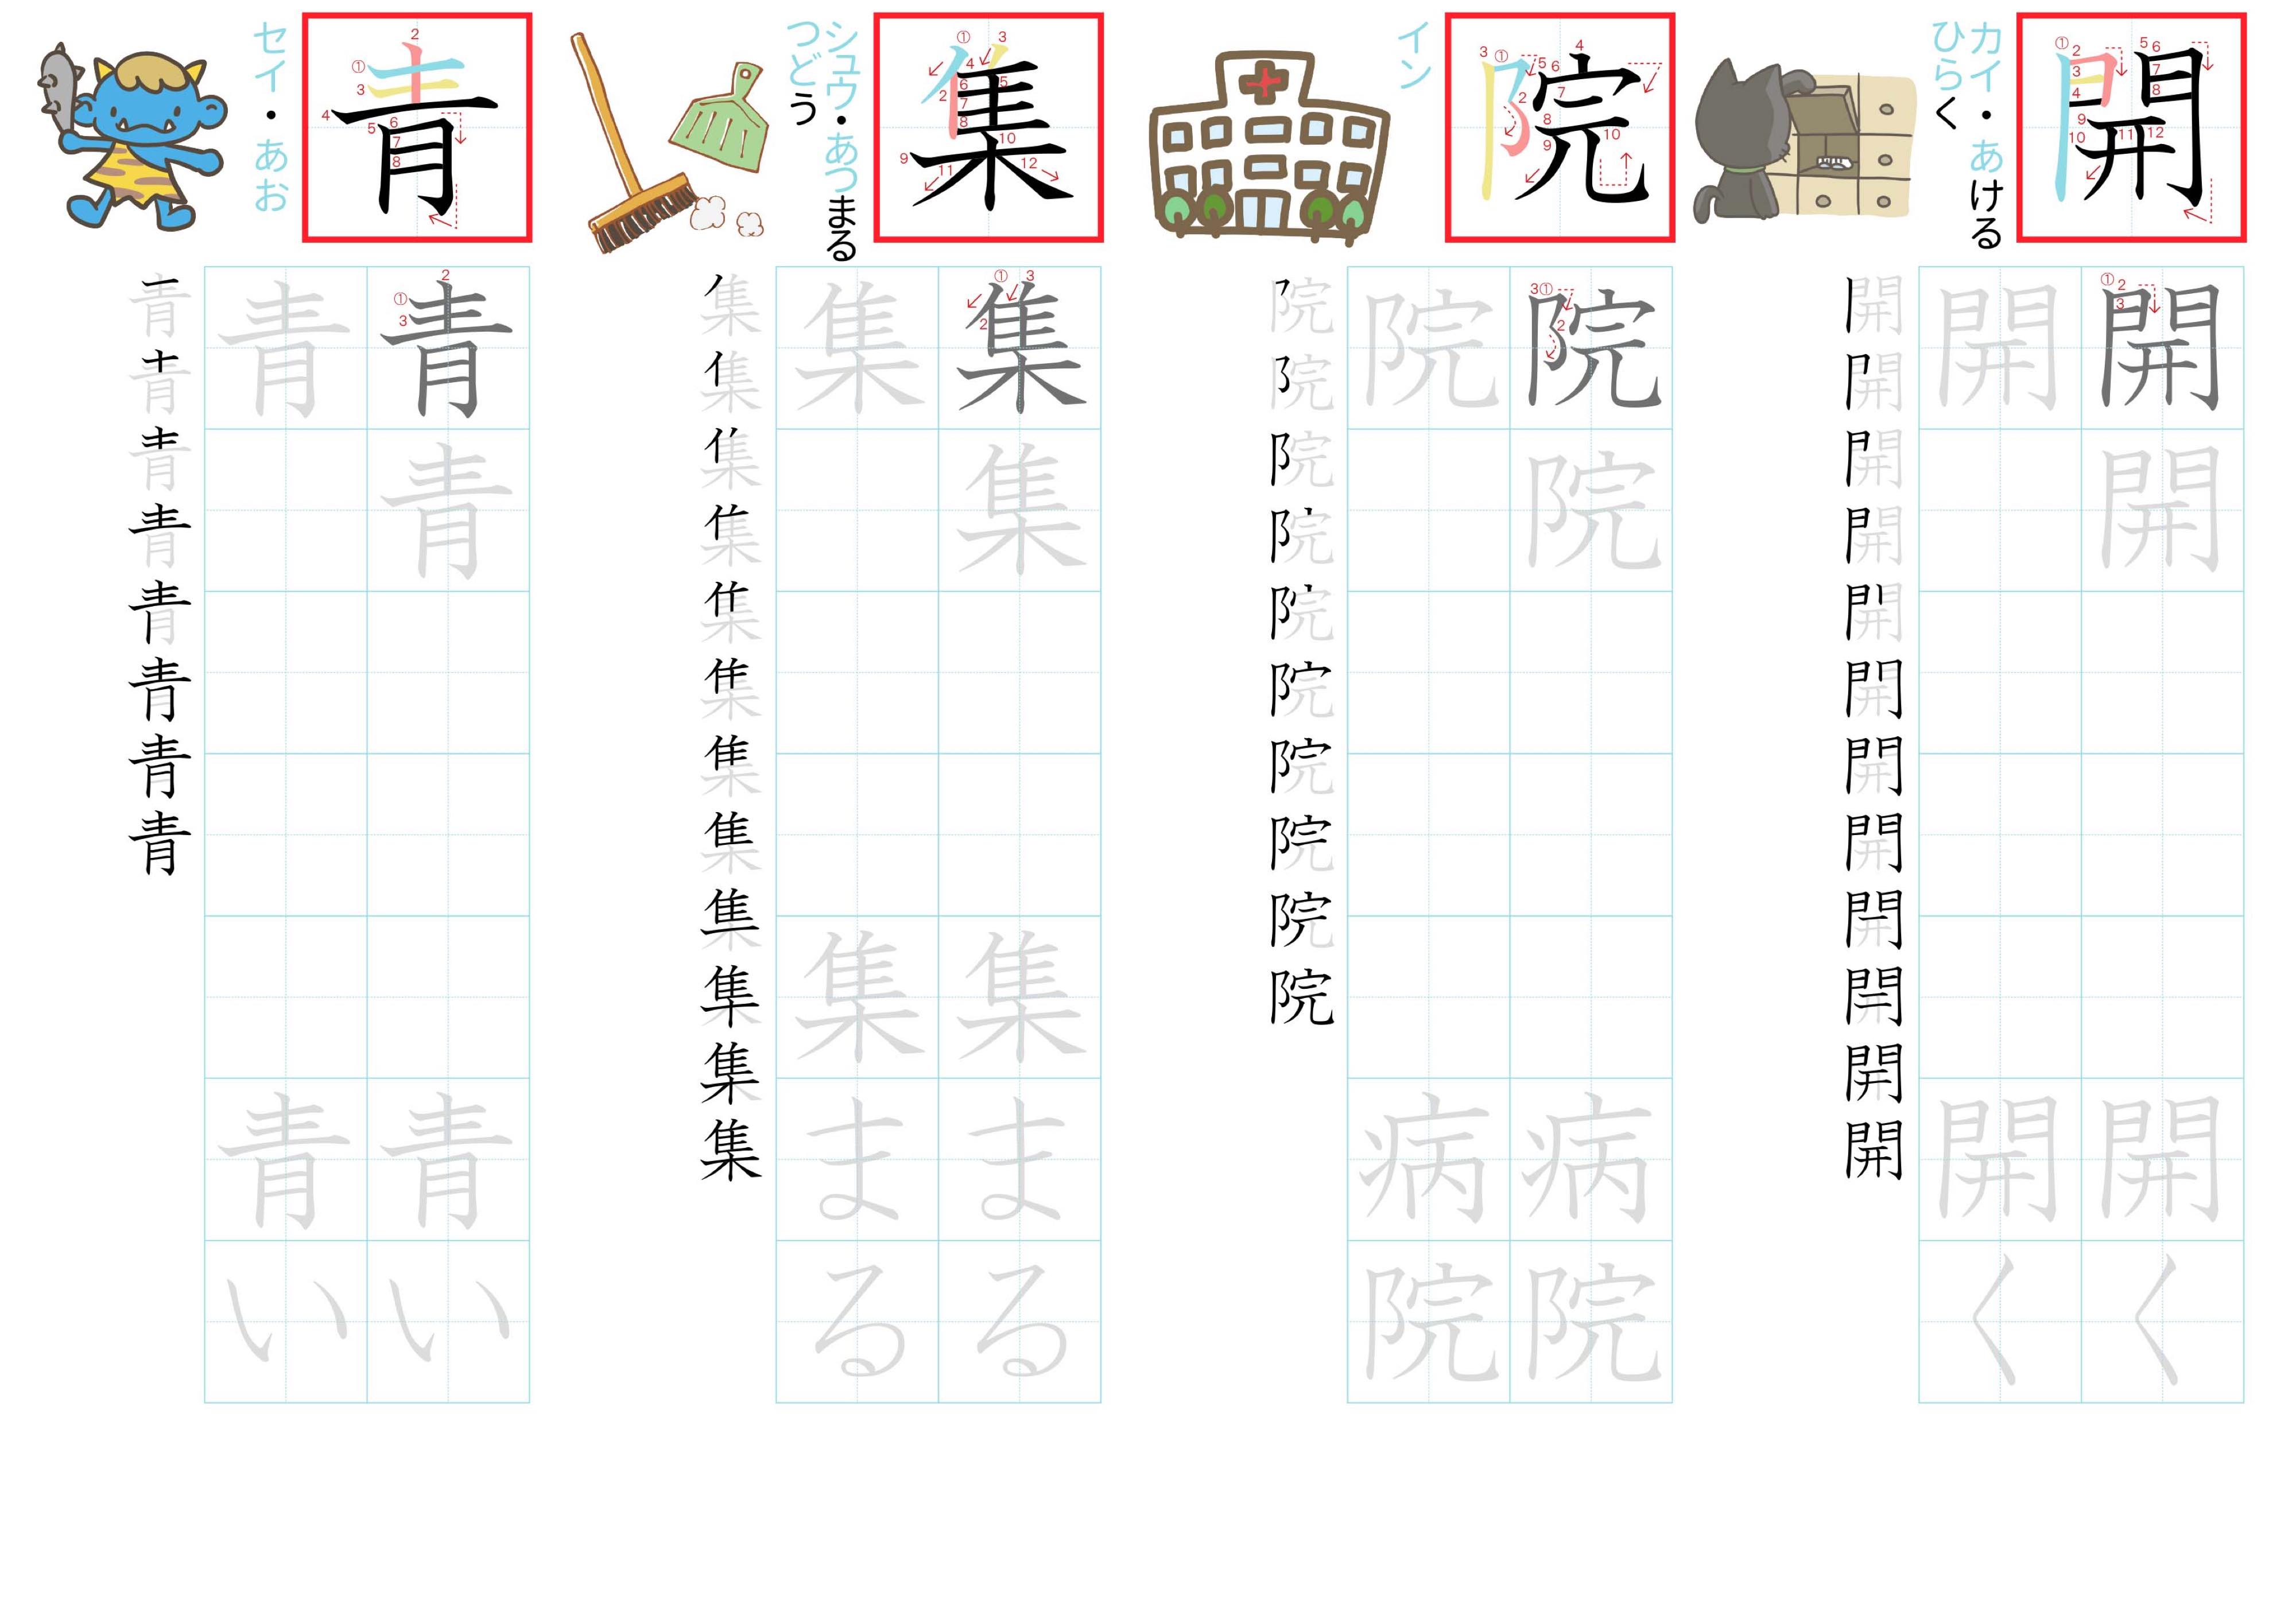 kanji-practice-card-n4-japanese-059